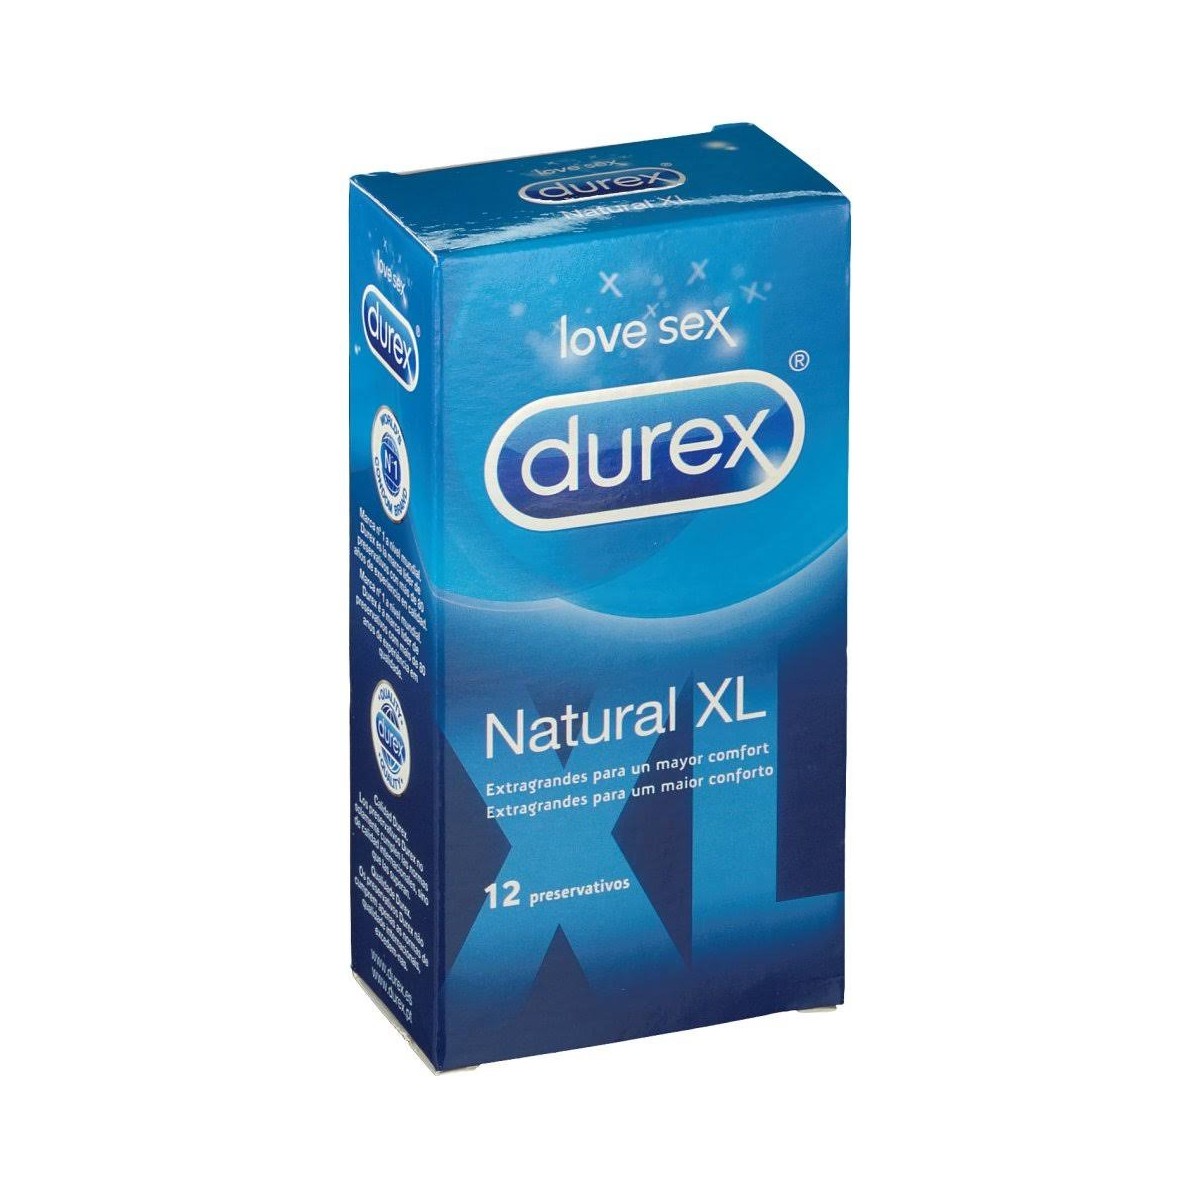 durex natural xl 12 preservativos